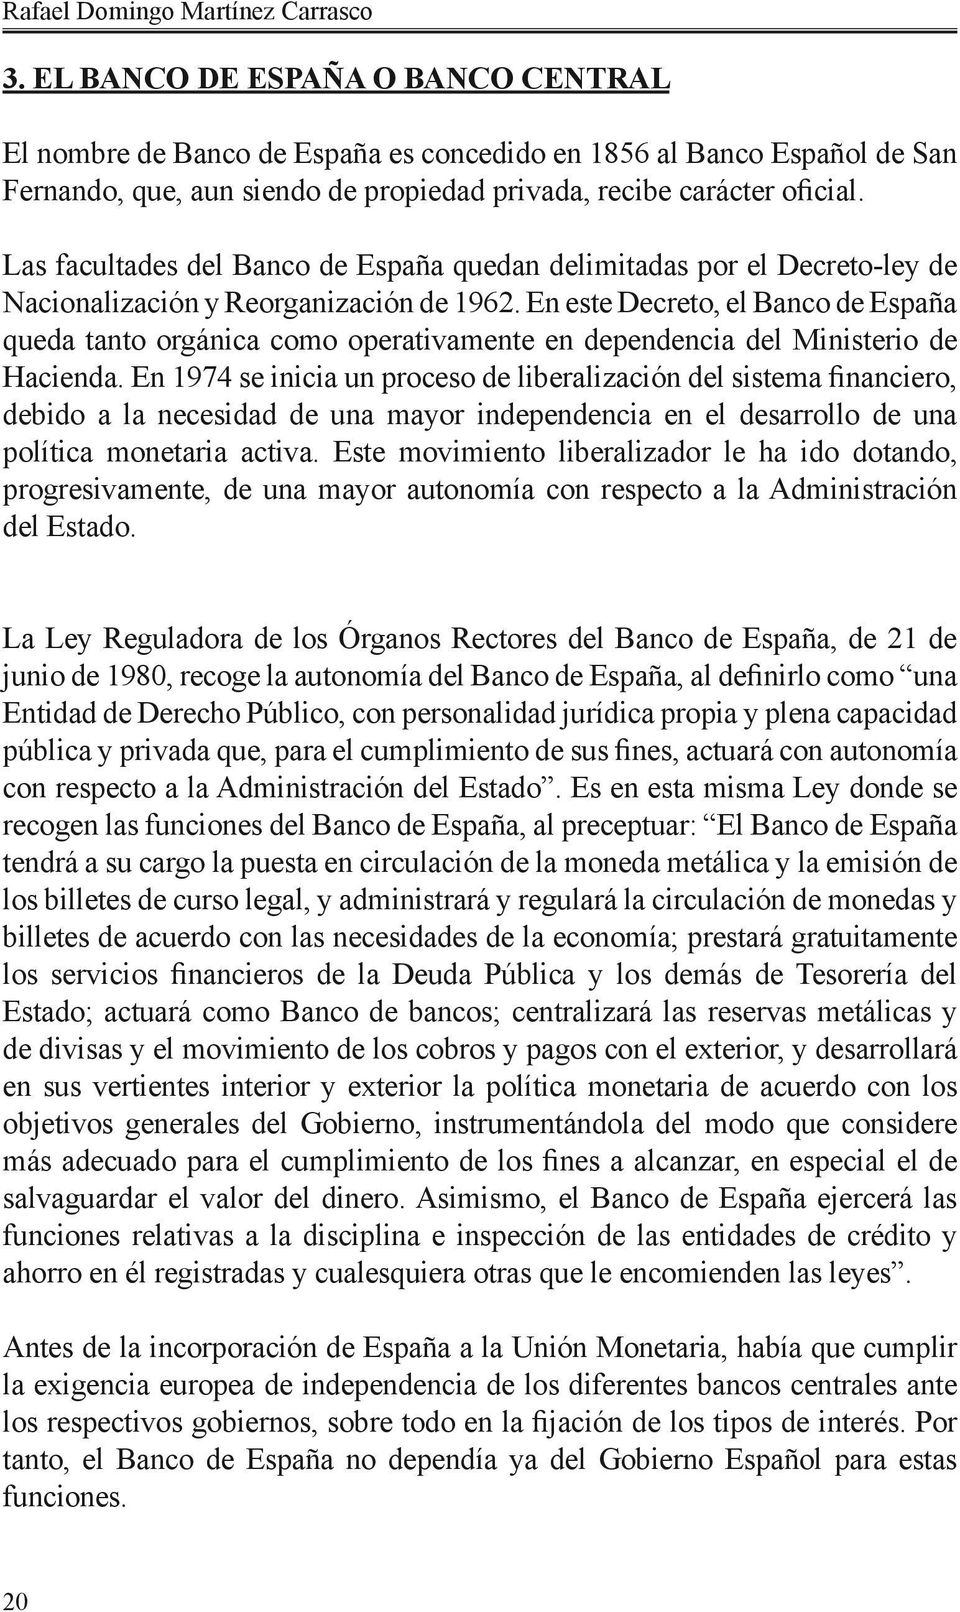 Las facultades del Banco de España quedan delimitadas por el Decreto-ley de Nacionalización y Reorganización de 1962.